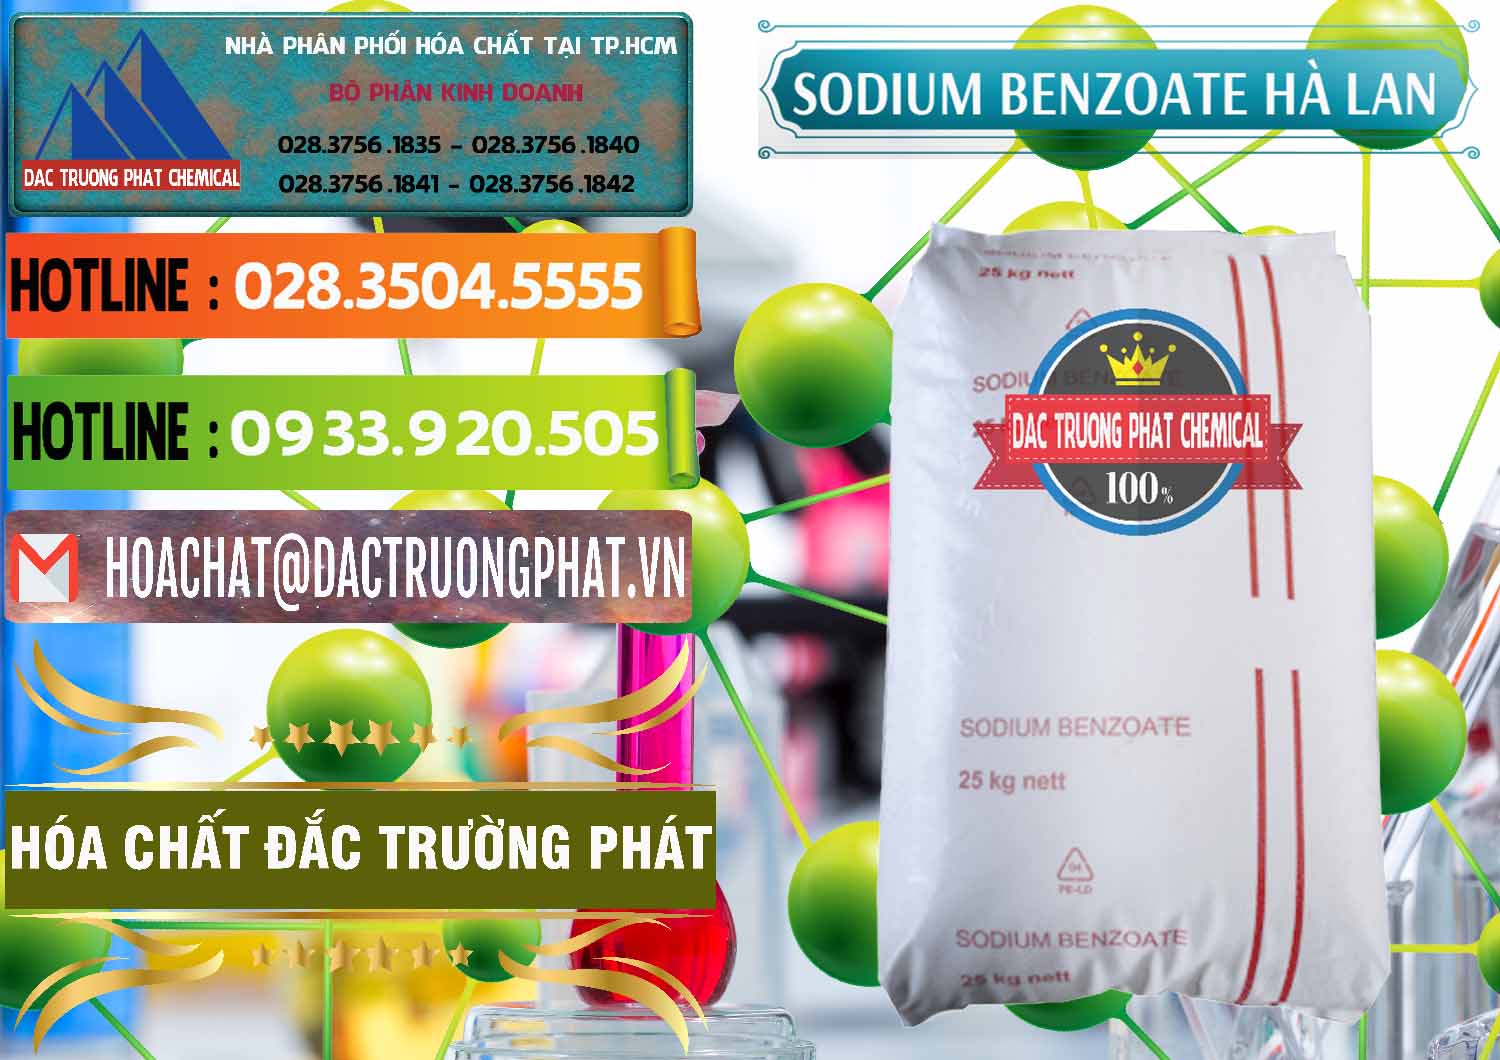 Cty phân phối và bán Sodium Benzoate - Mốc Bột Chữ Cam Hà Lan Netherlands - 0360 - Phân phối _ nhập khẩu hóa chất tại TP.HCM - cungcaphoachat.com.vn